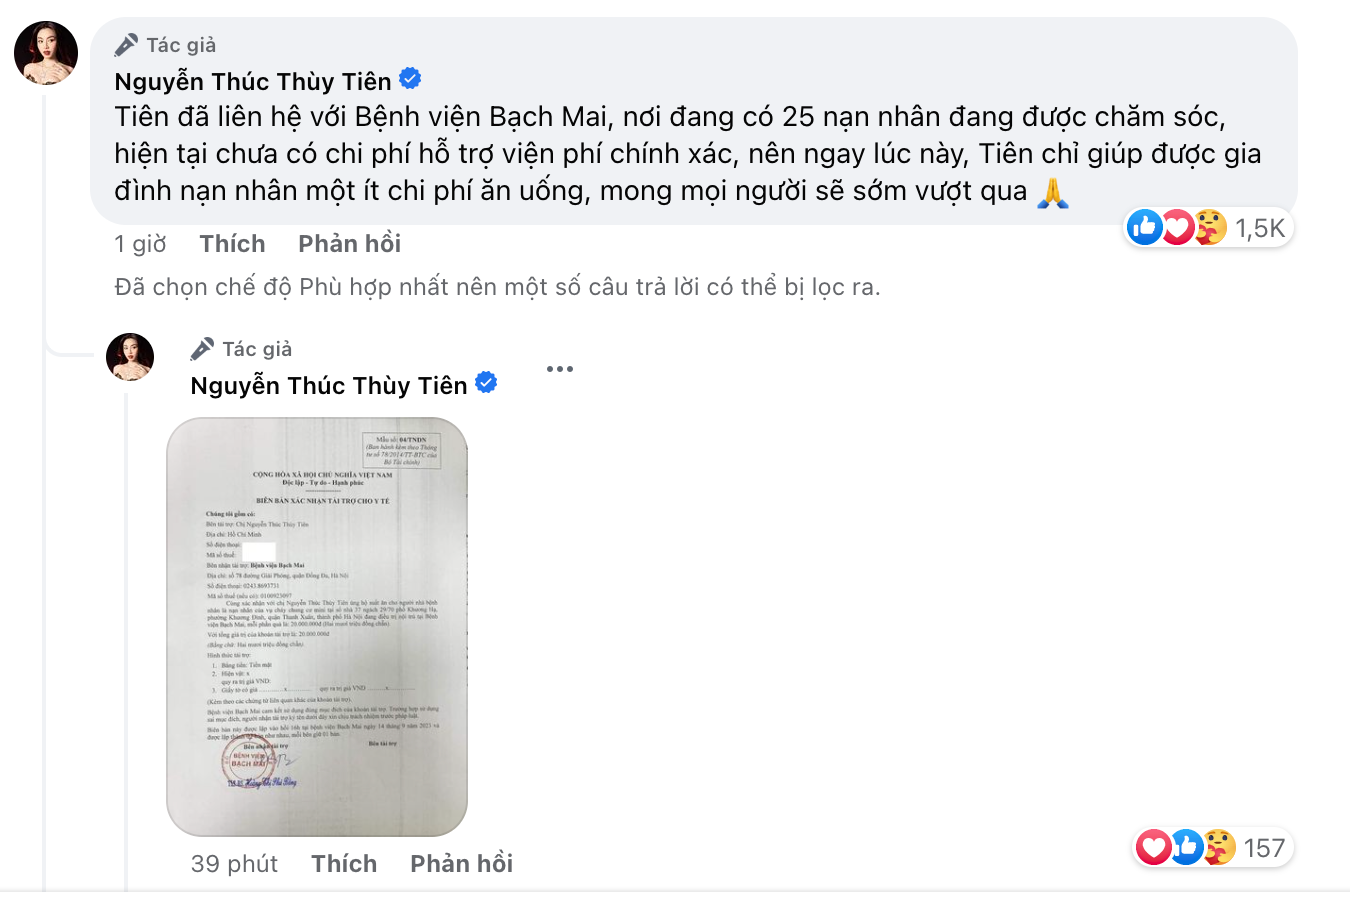 Hoa hậu Thùy Tiên hỗ trợ 25 nạn nhân cháy chung cư nhưng vẫn bị anti fan tìm cớ mỉa mai 1 điều - ảnh 3